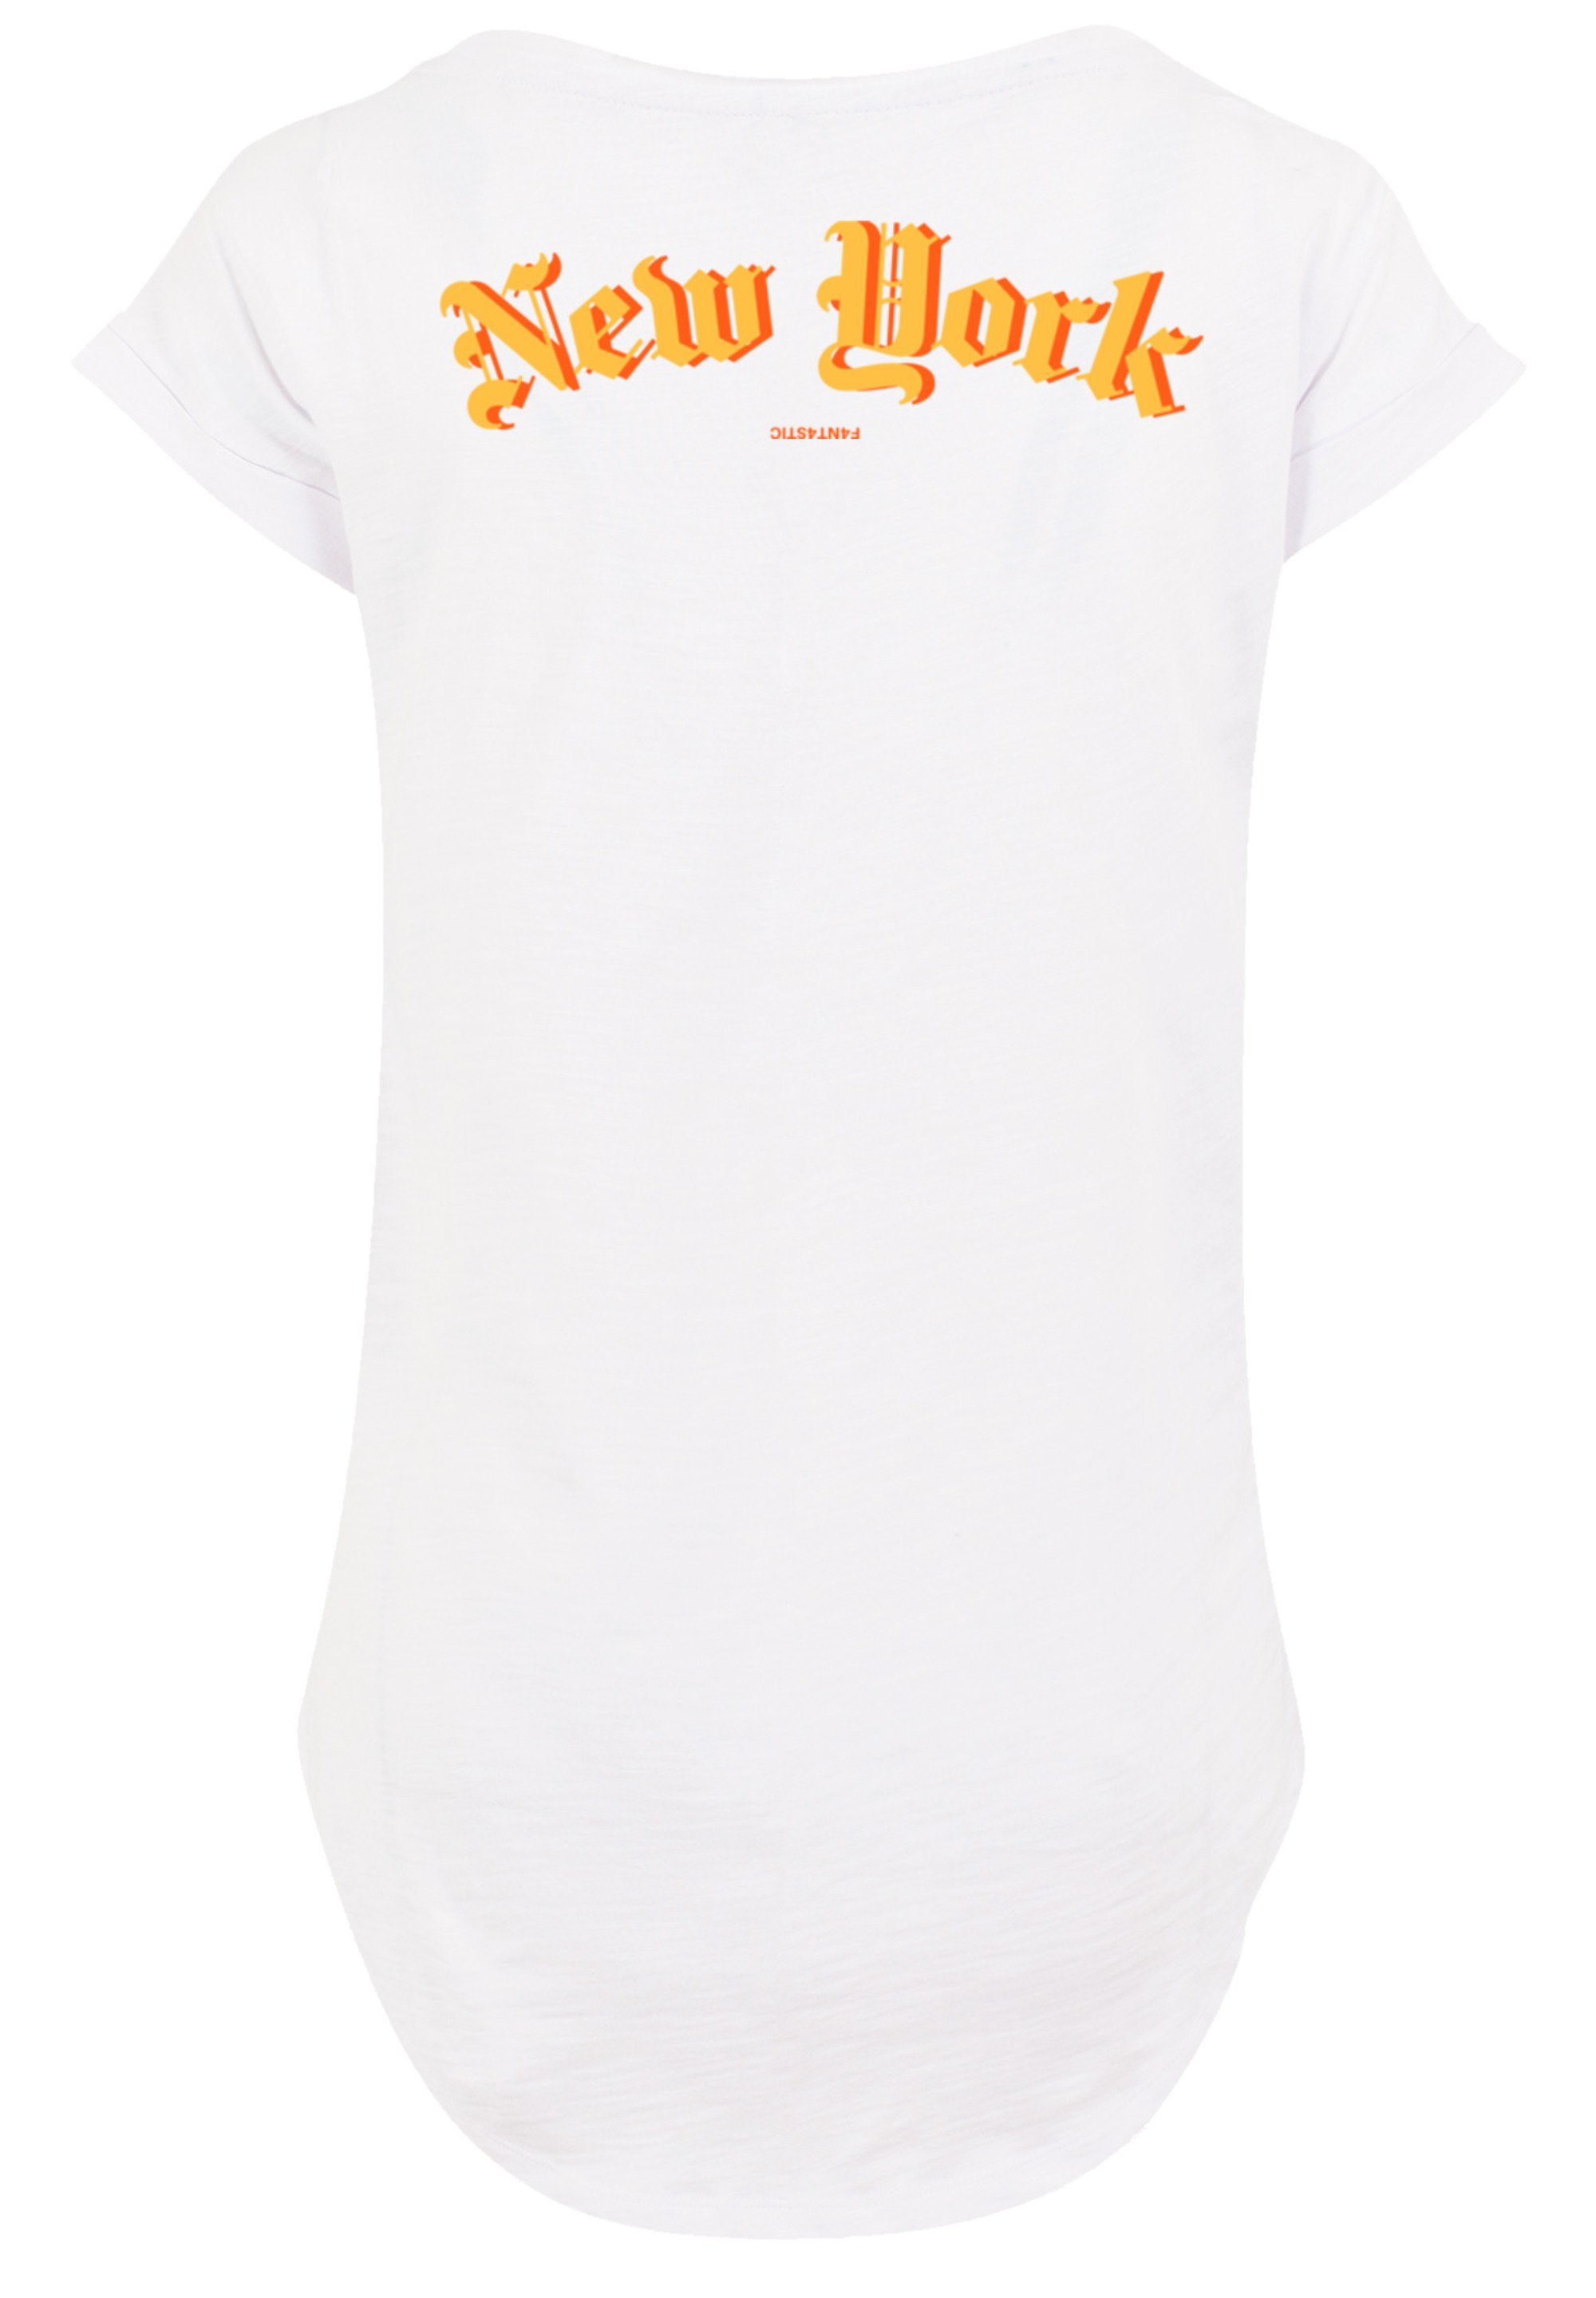 York PLUS New F4NT4STIC Print, Baumwollstoff Tragekomfort mit weicher Sehr SIZE T-Shirt hohem